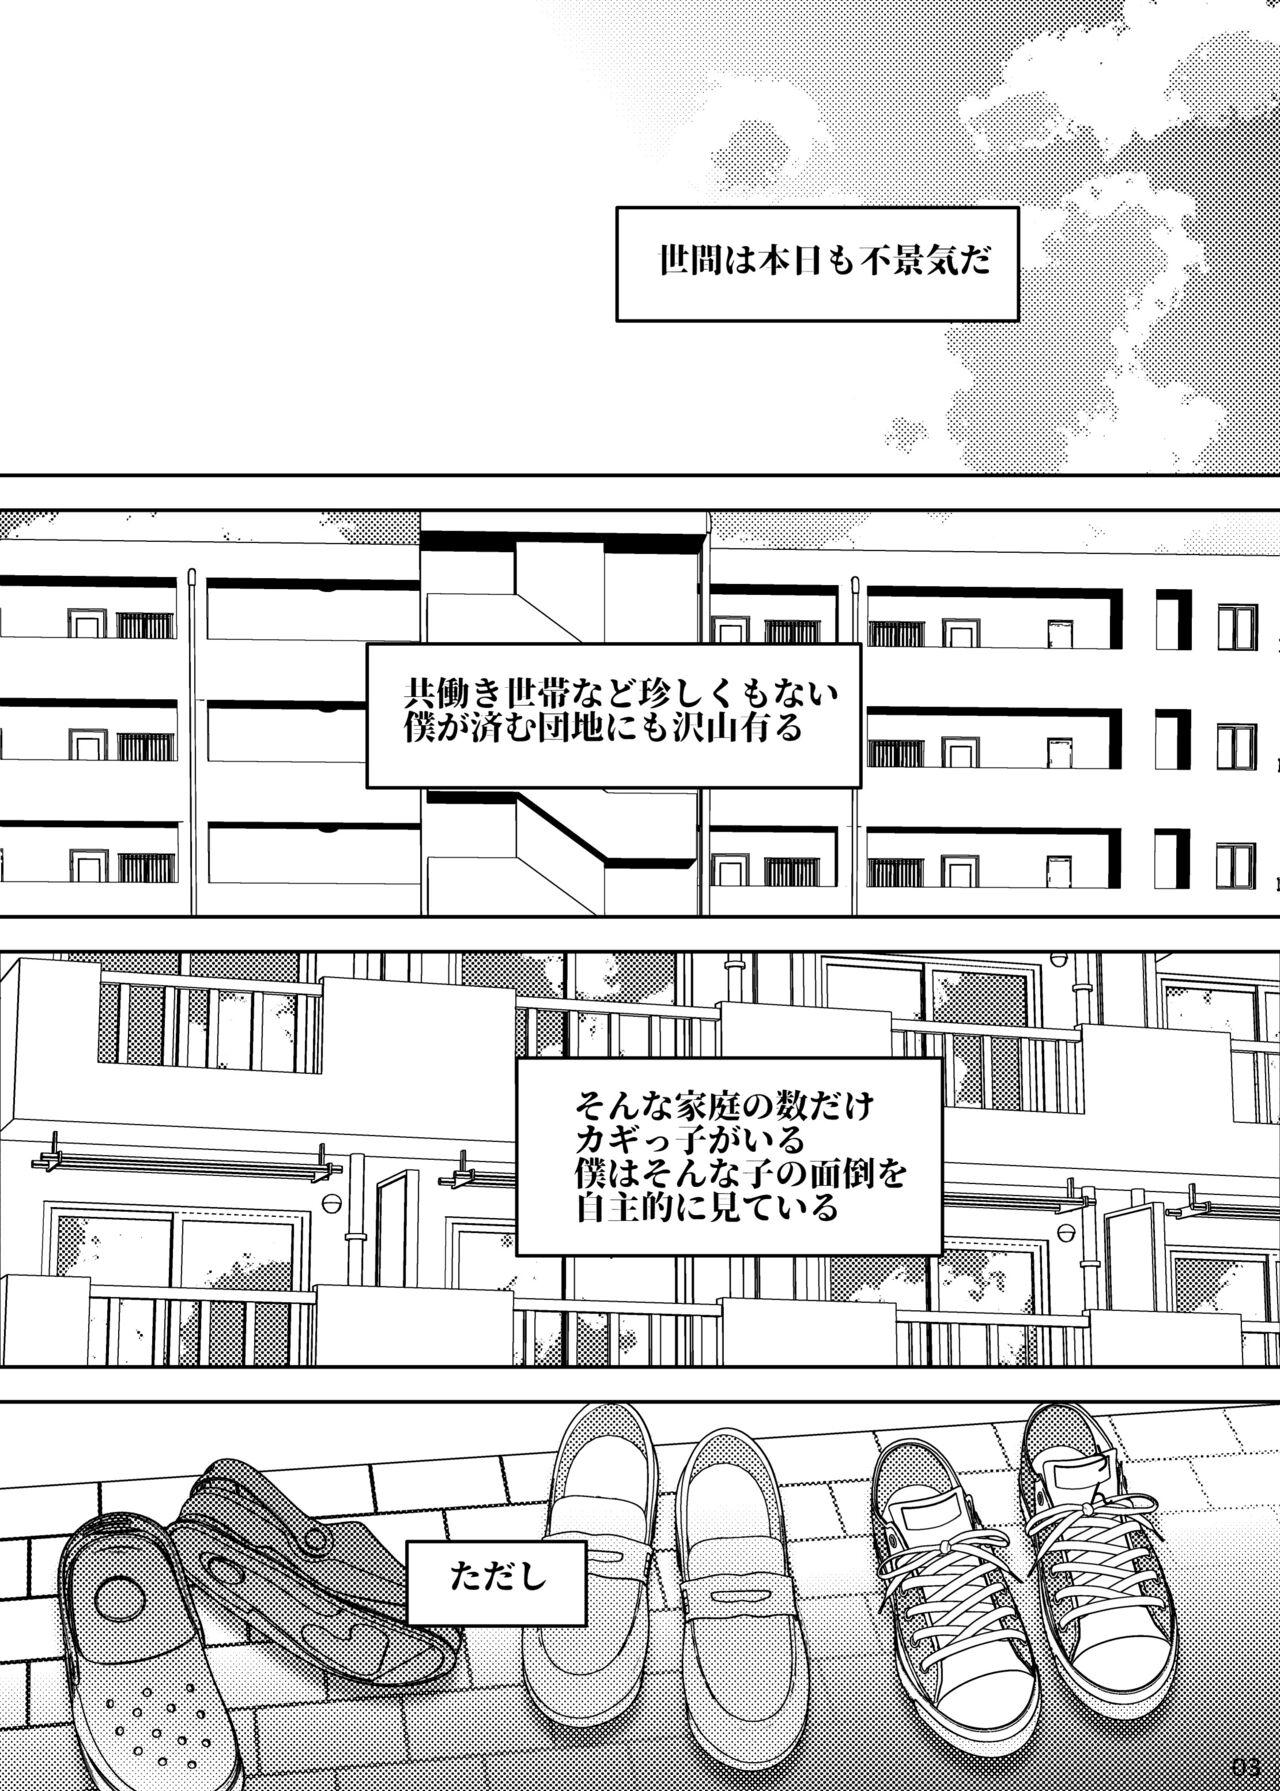 Curves 事案発生Re:04 +シン・事案発生01 Chudai - Page 3